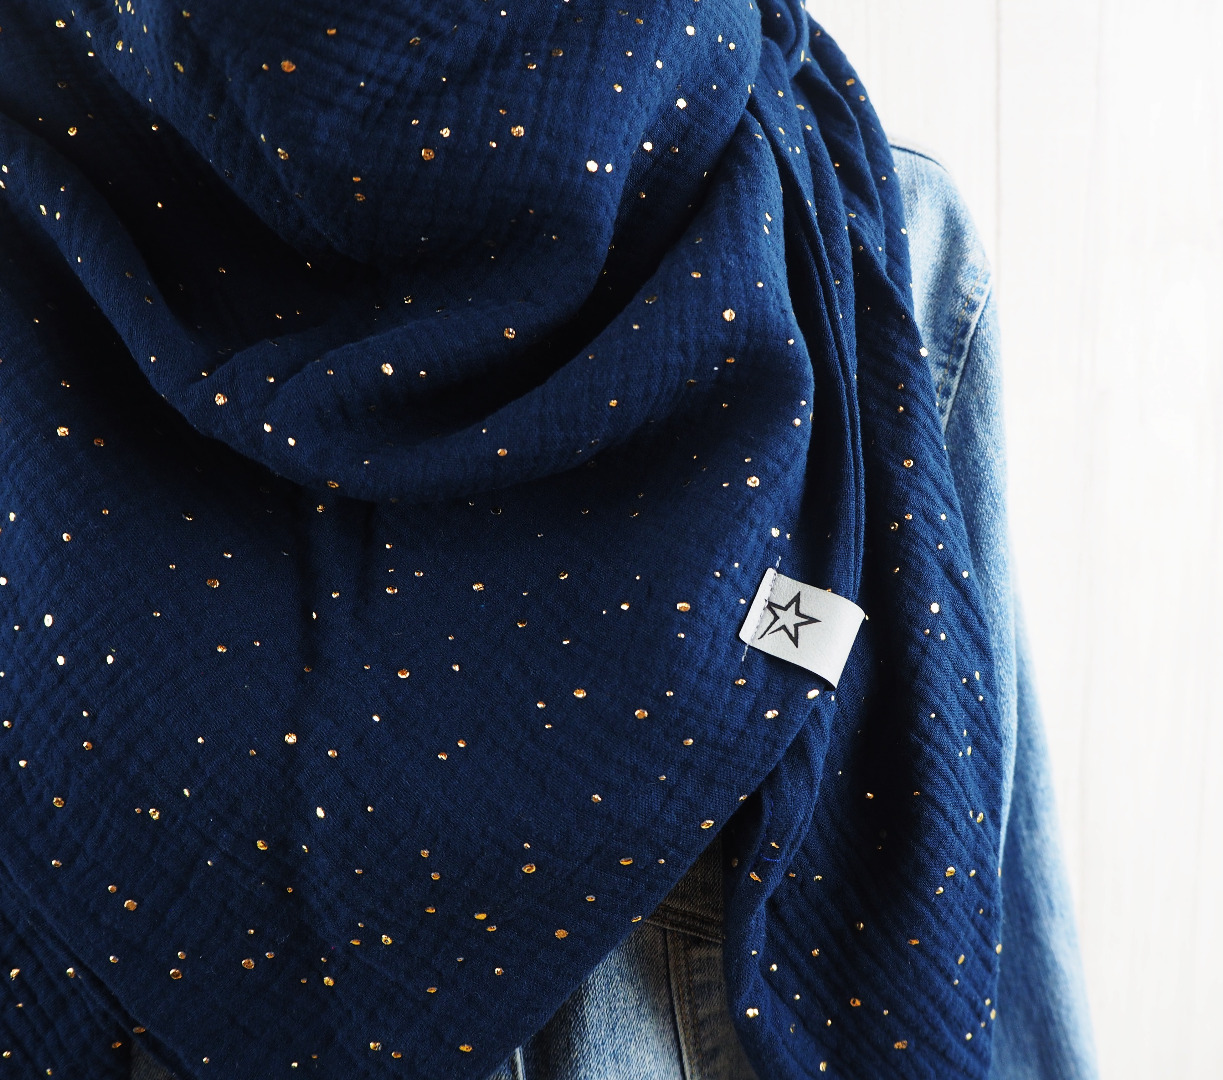 Tuch Dreieckstuch Musselin Damen Schal dunkelblau mit goldenen Punkten XXL Tuch aus Baumwolle